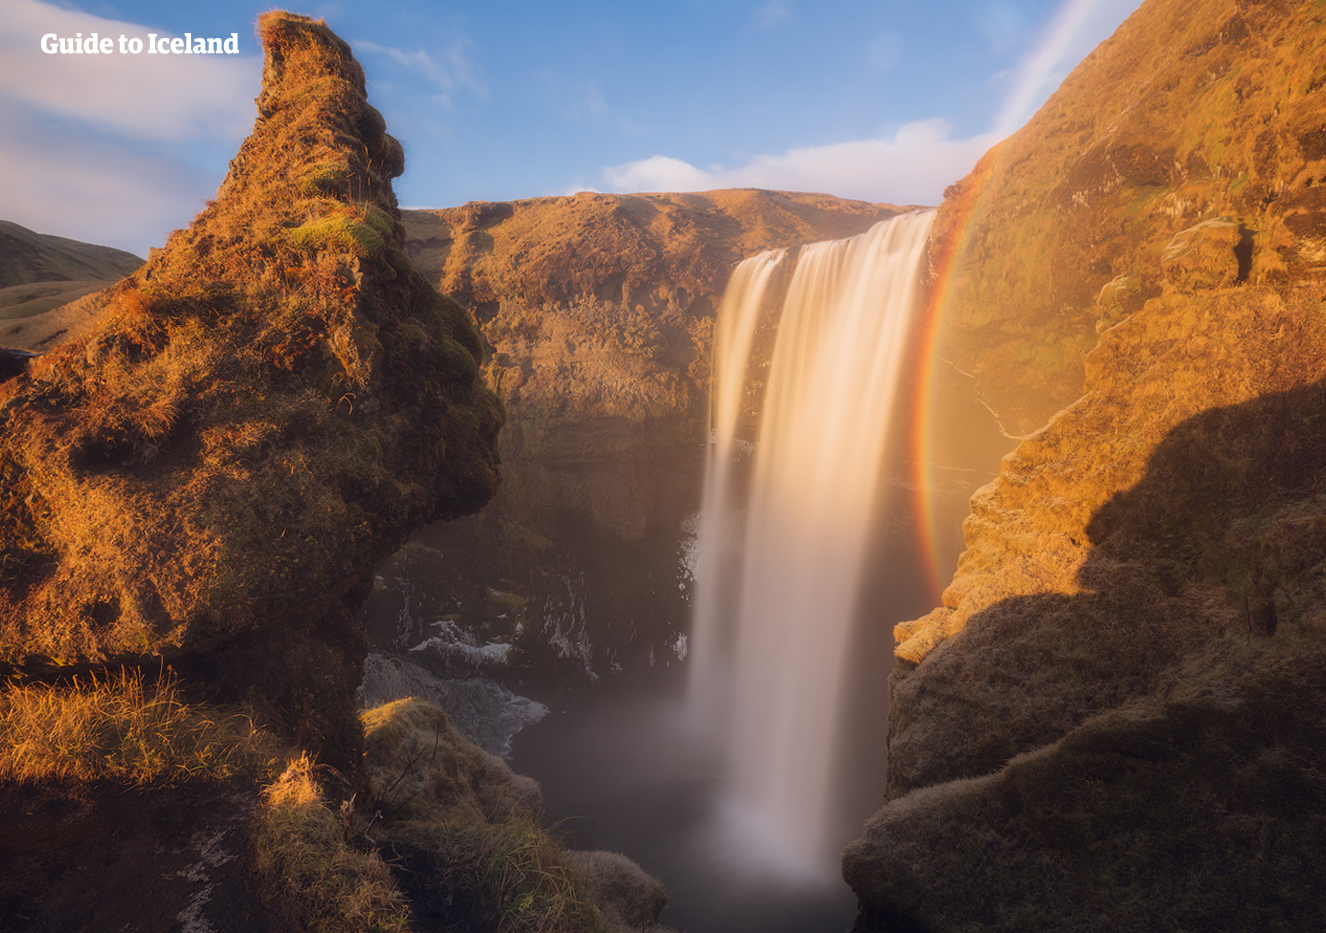 Captura una gran fotografía frente a la cascada de Skógafoss en la Costa Sur.